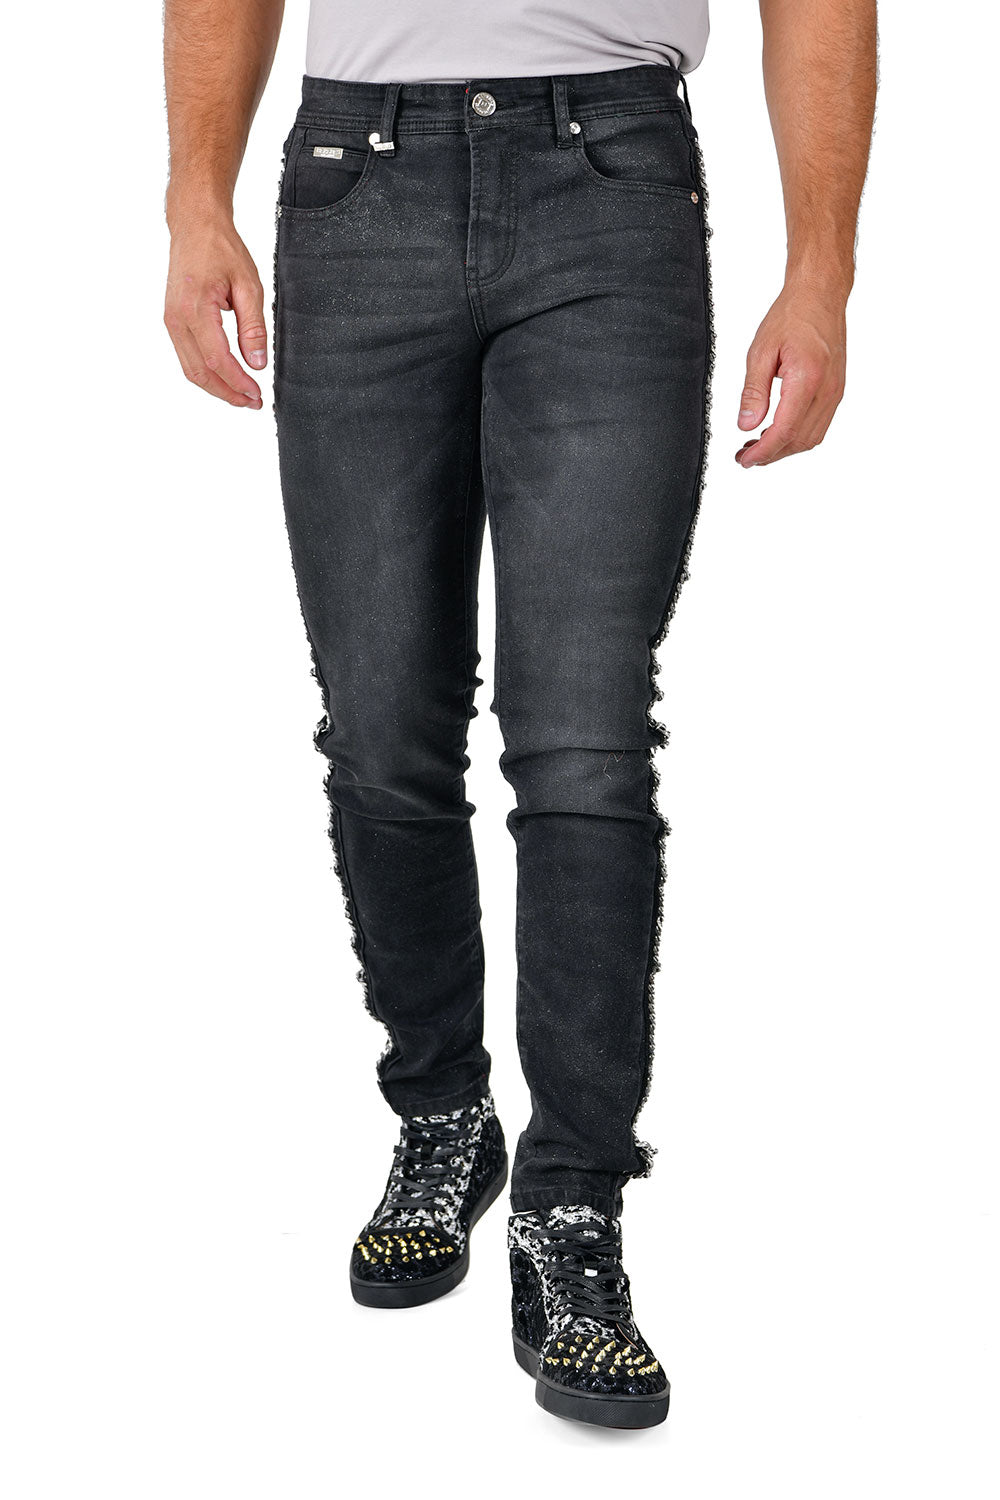 BARABAS Men's Sparkly Glittery Chain Design Denim Jeans SN8855